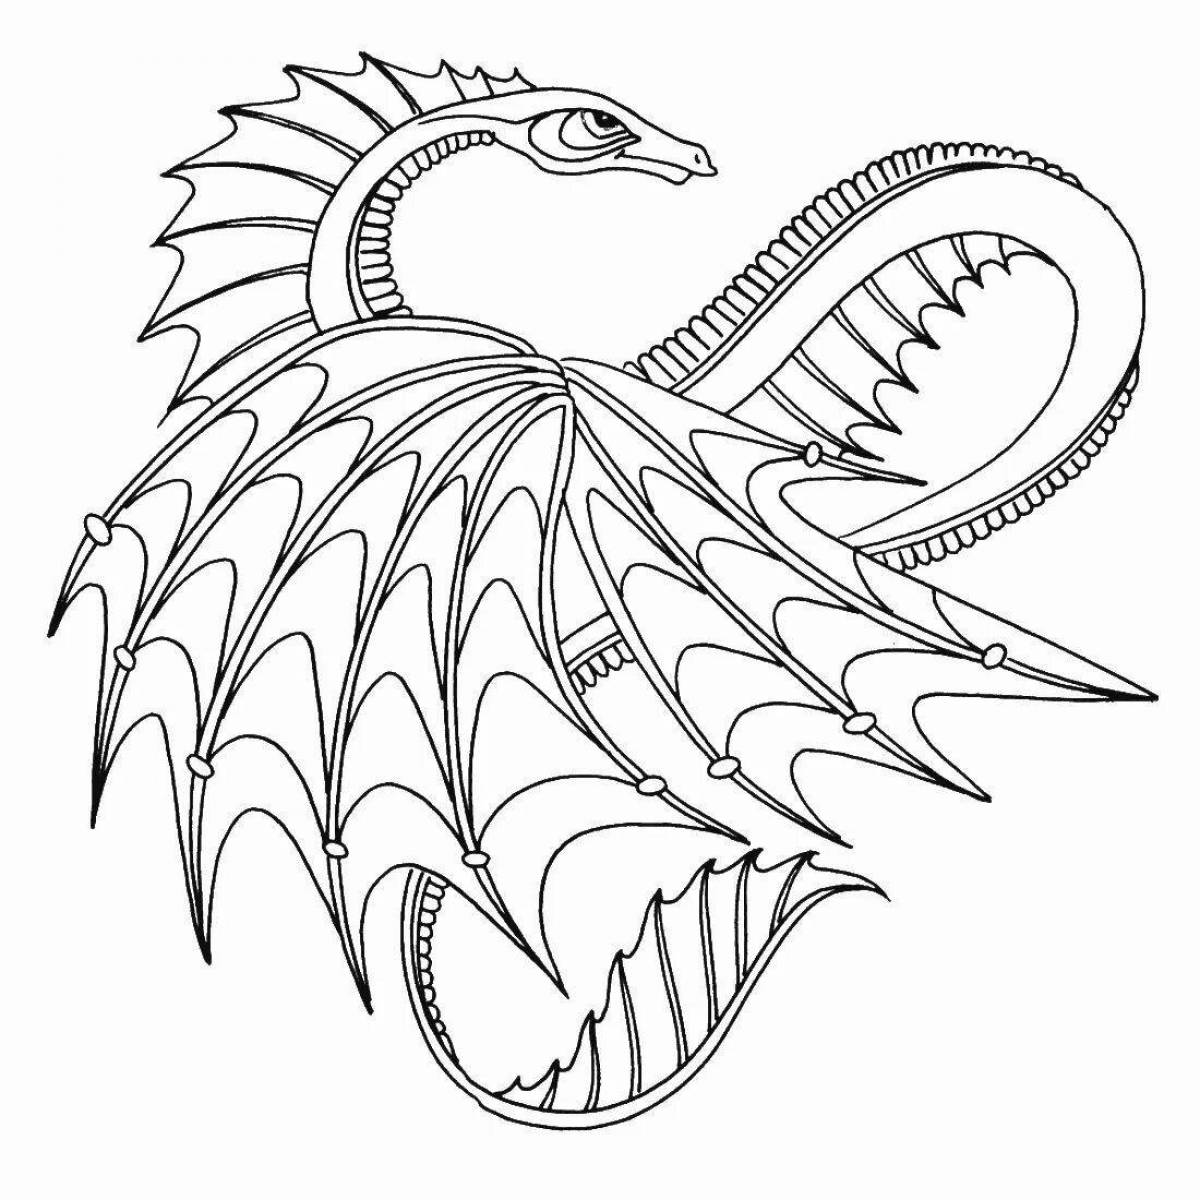 Роскошная раскраска фигурка дракона